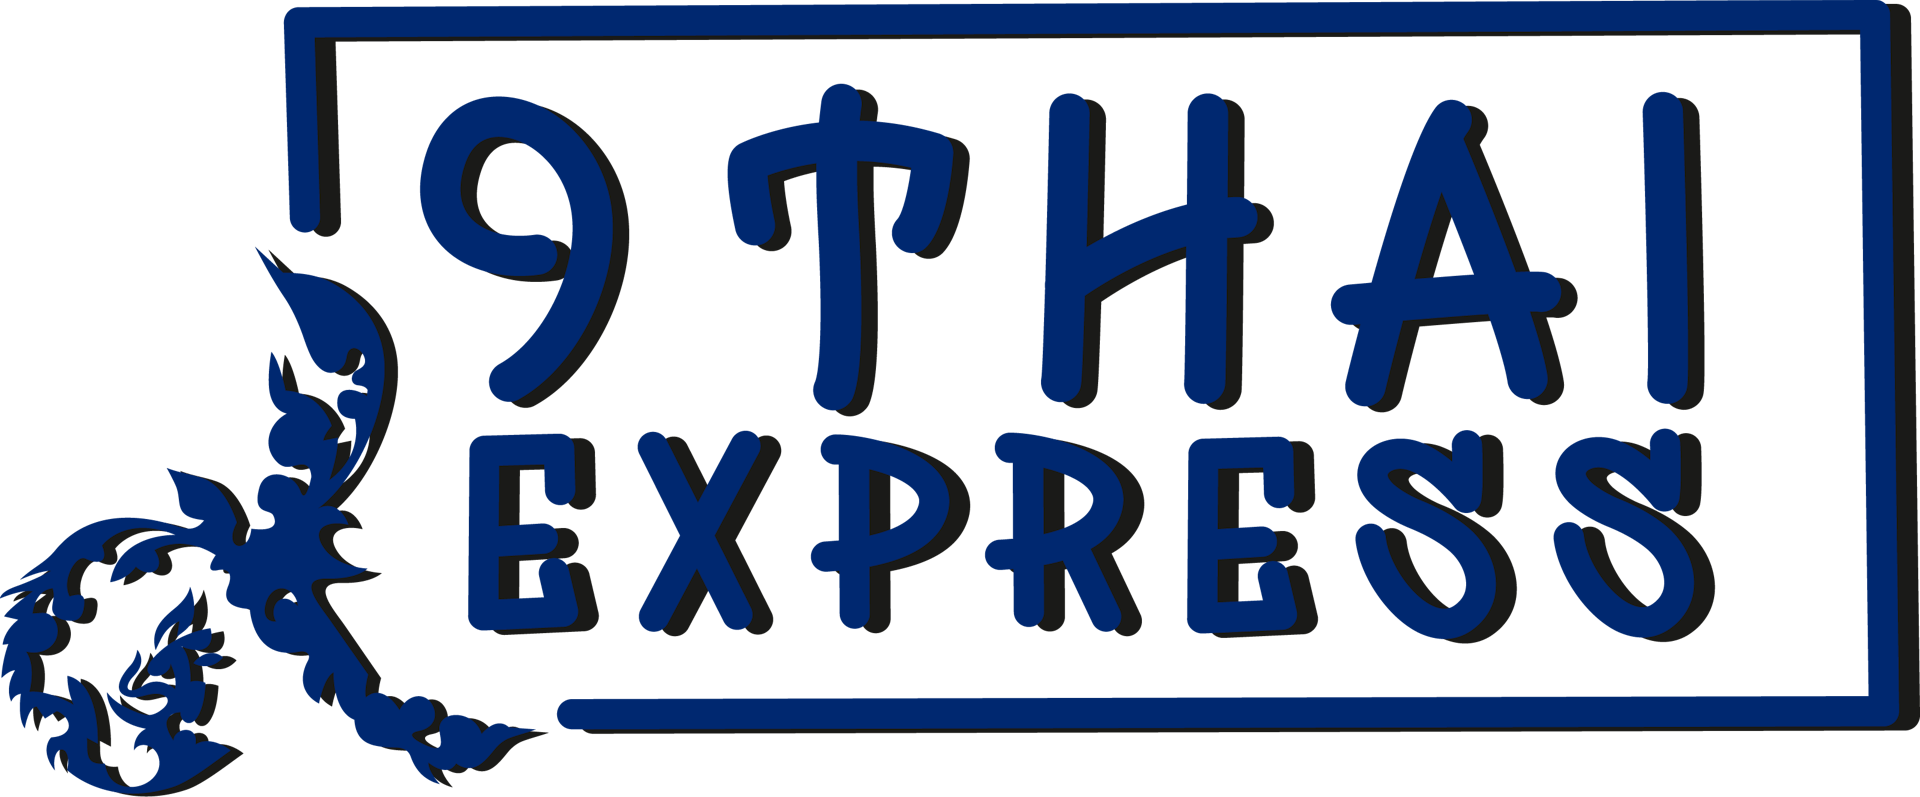 9 Thai Express